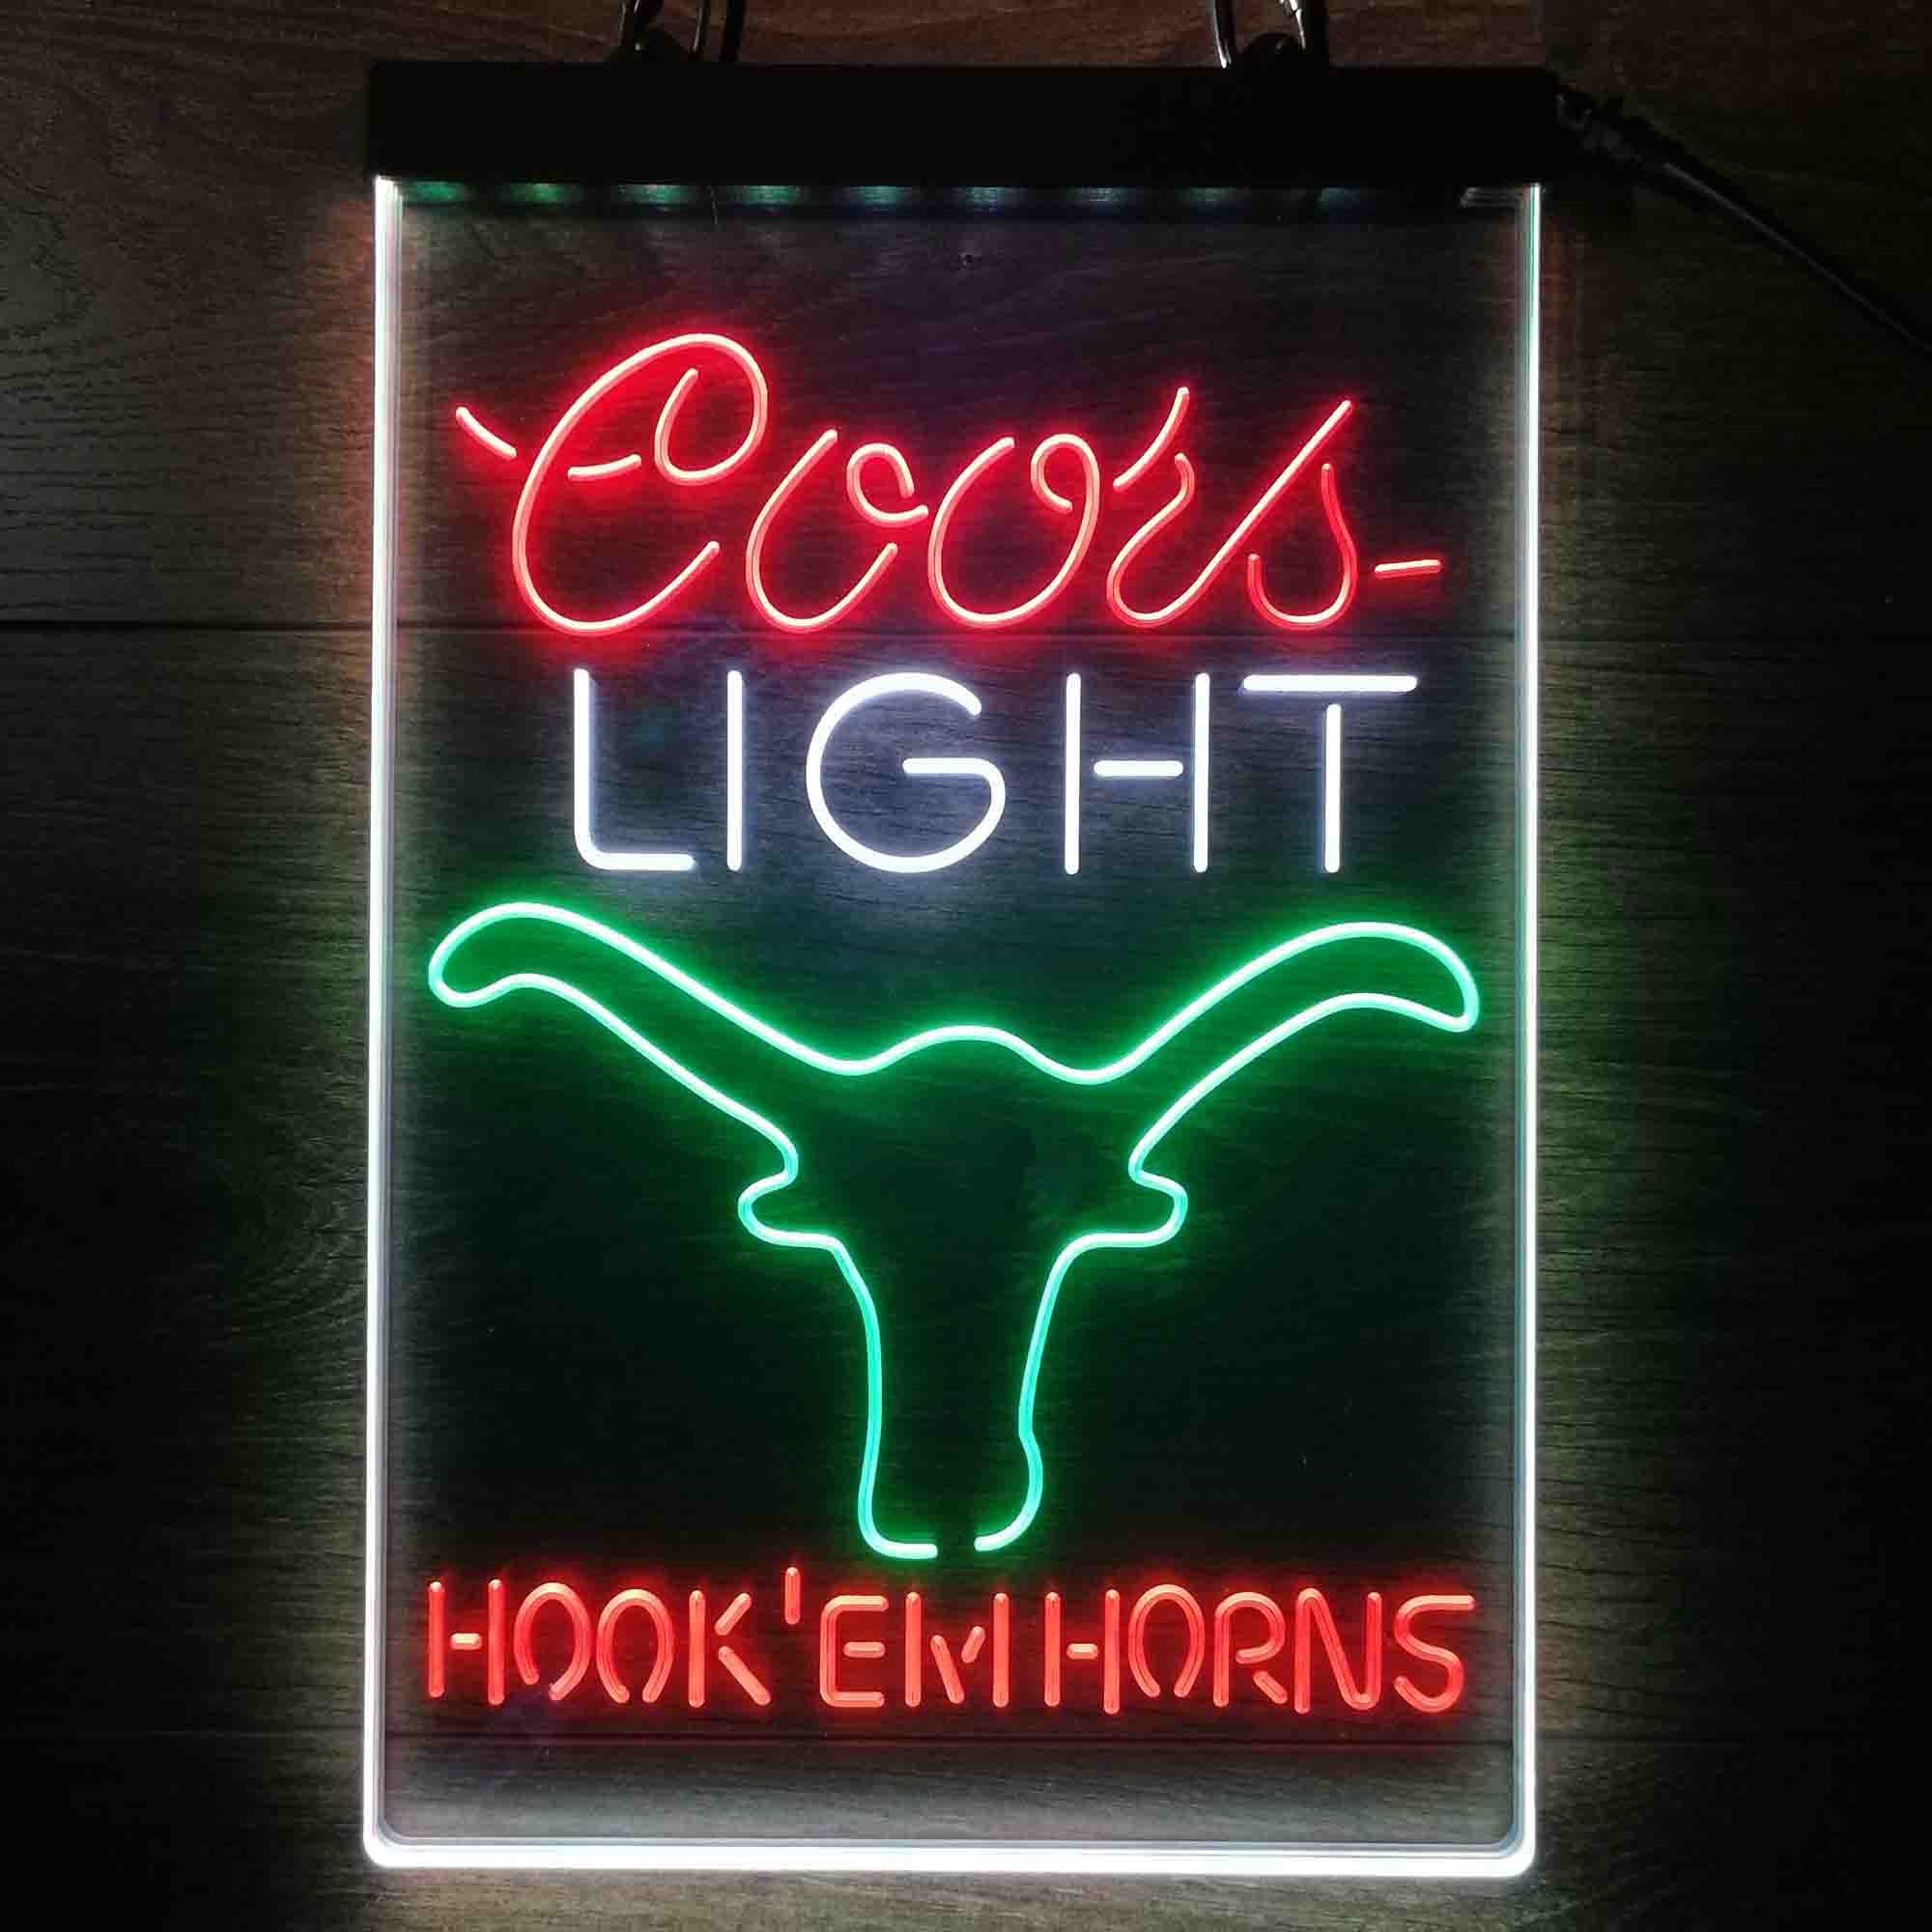 Hook em Horns Coors Light Neon LED Sign 3 Colors